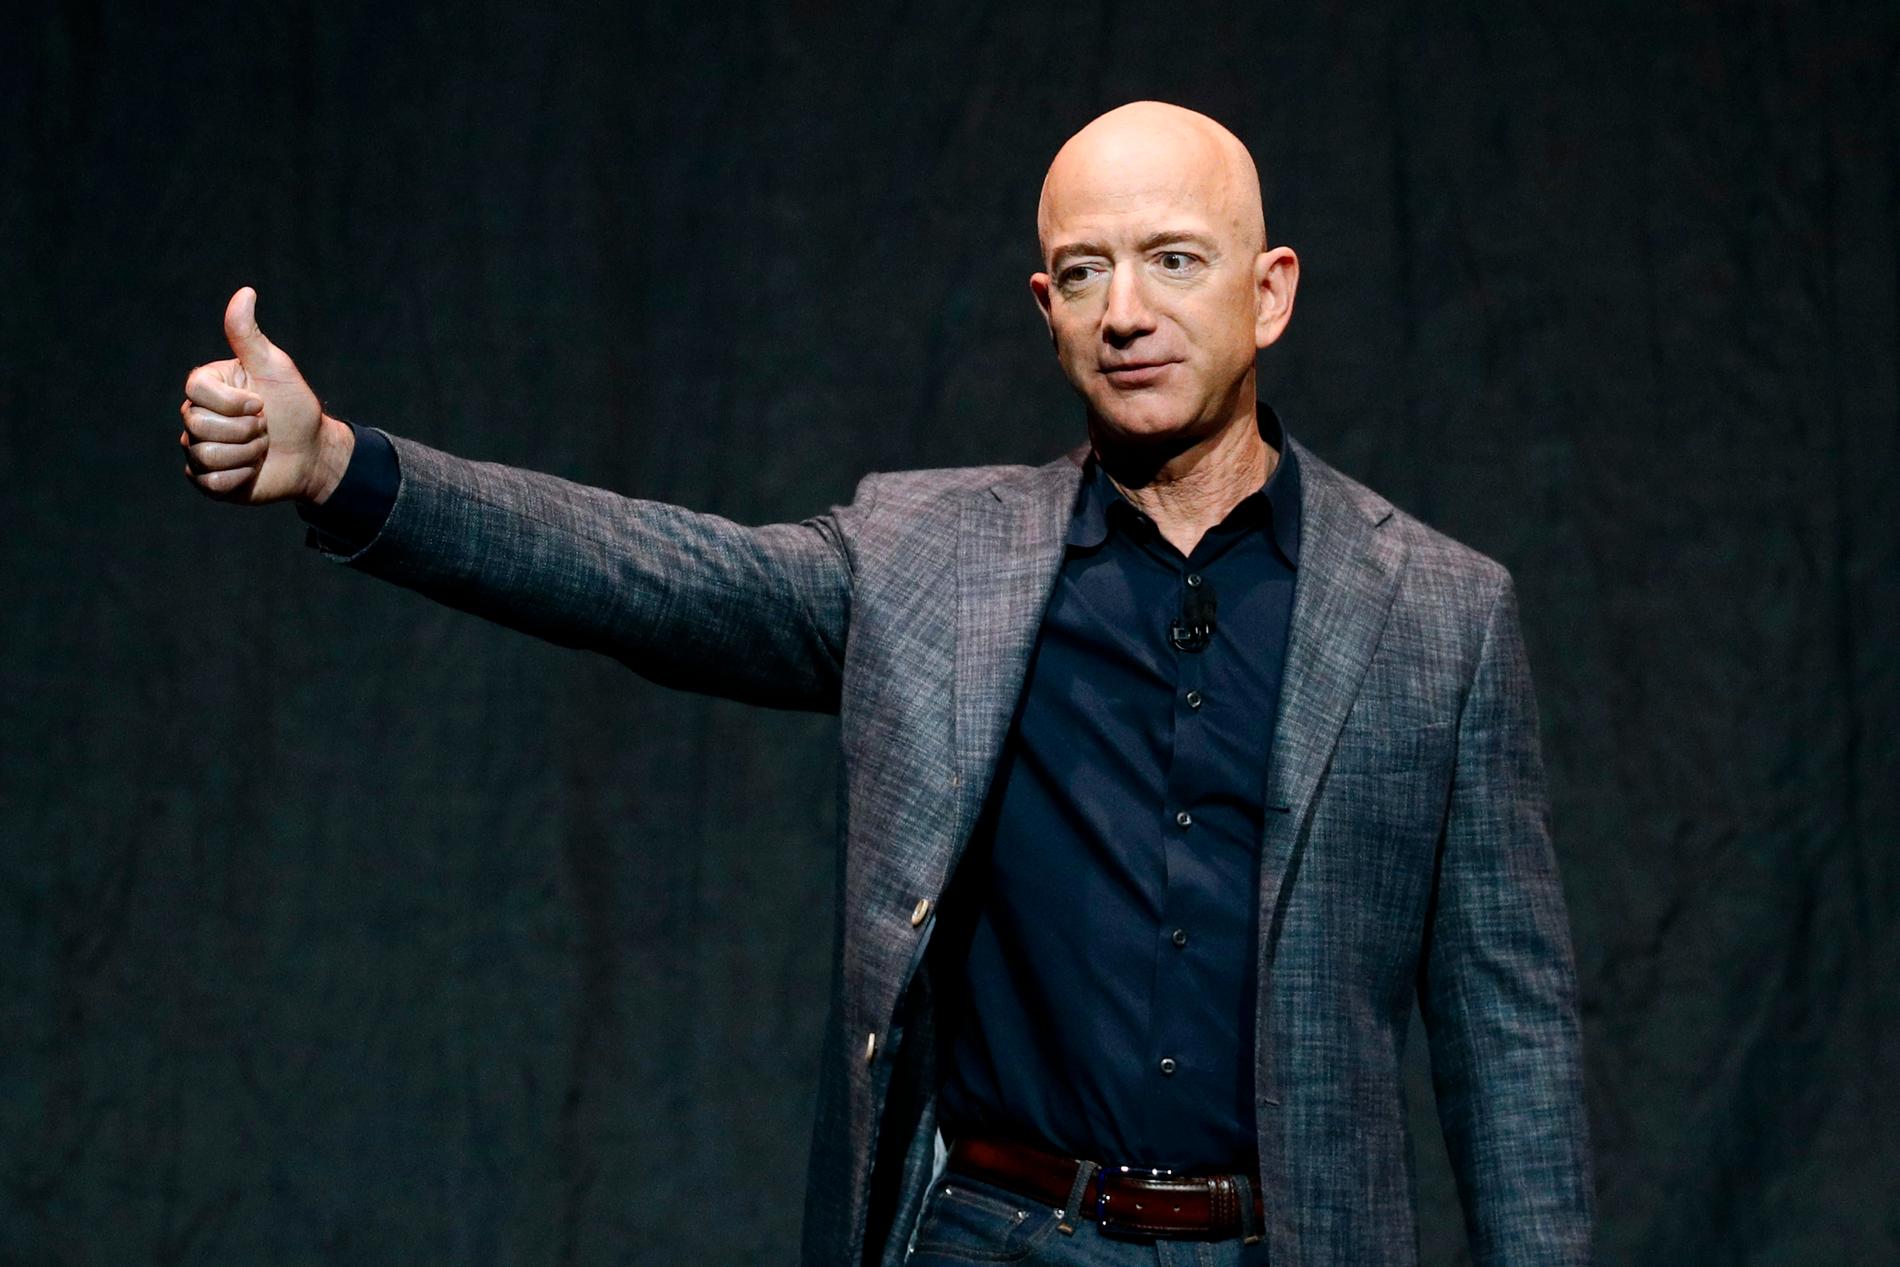 Jeff Bezos har just slutat som vd för Amazon, bland annat för att kunna lägga mer tid på sitt rymdföretag Blue Origin. Arkivbild.